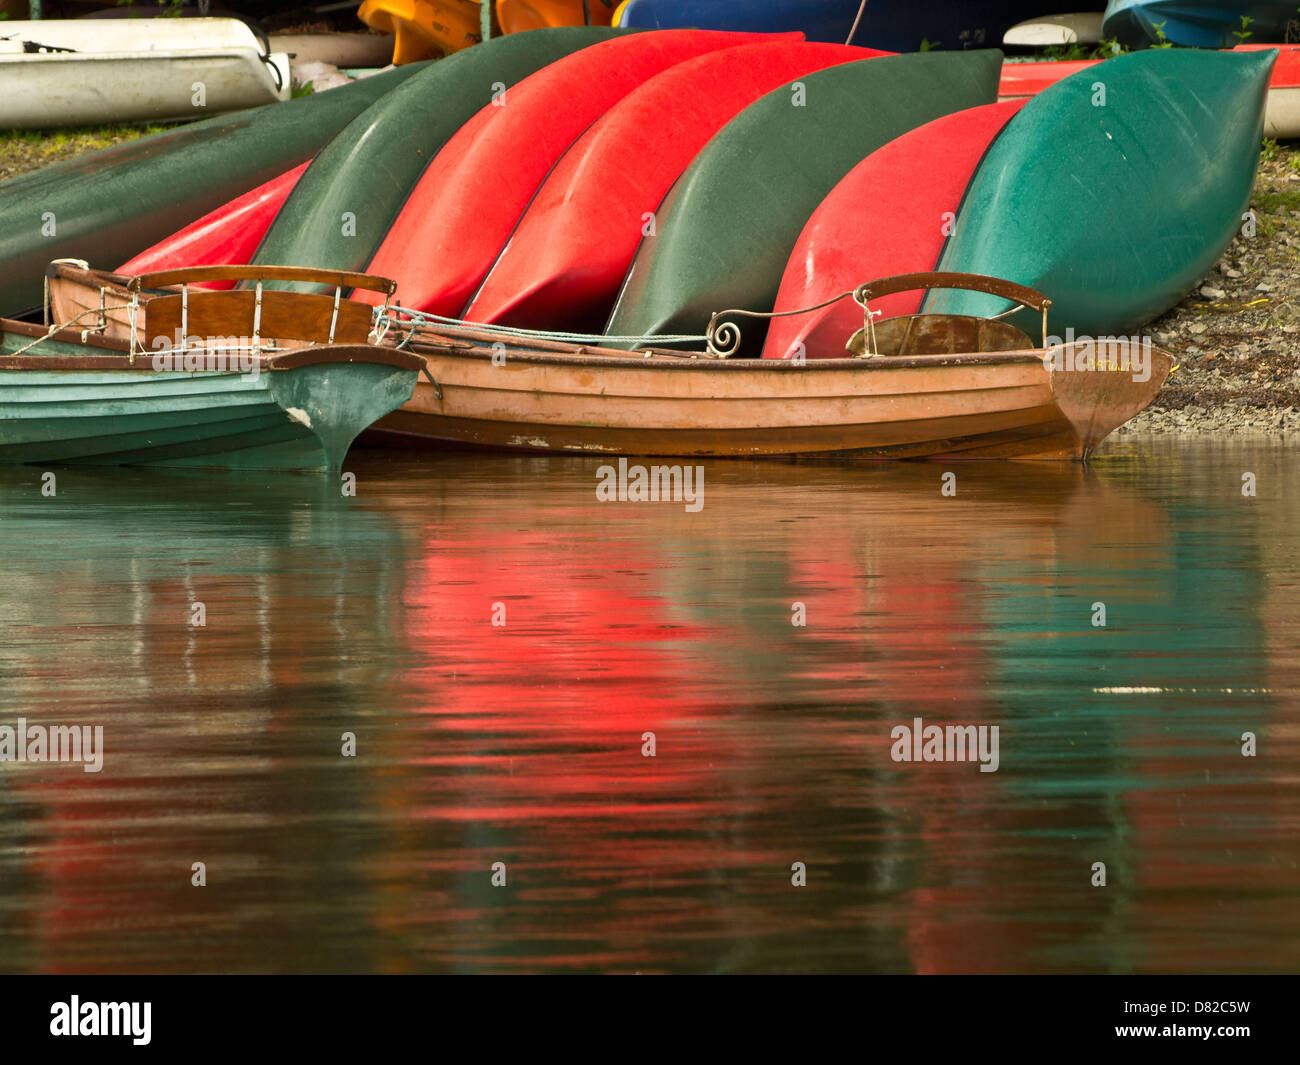 Rot und grün bunt leuchtende Boote am Ufer des Sees, Nicol Ende, Lake District, Cumbria, UK Stockfoto